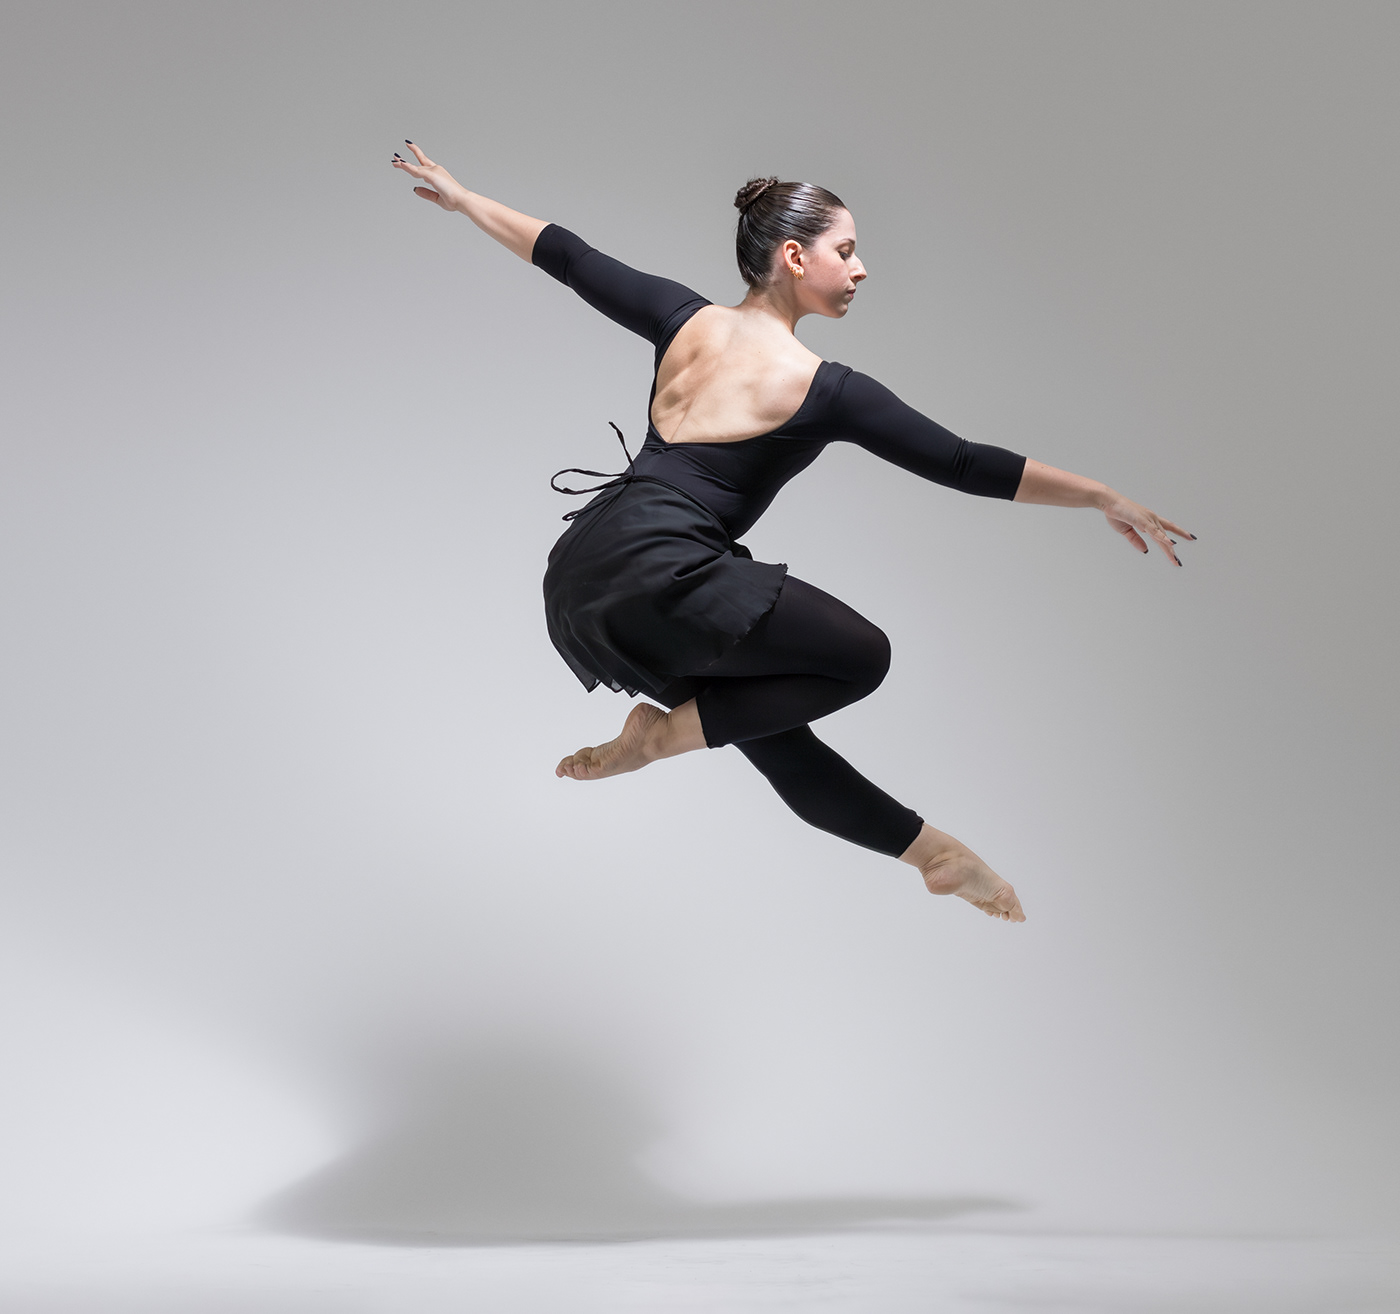 DANCE   women ballerina bailarina photoshoot ensaio ensaiofotografico ensaio fotográfico retrato dancer